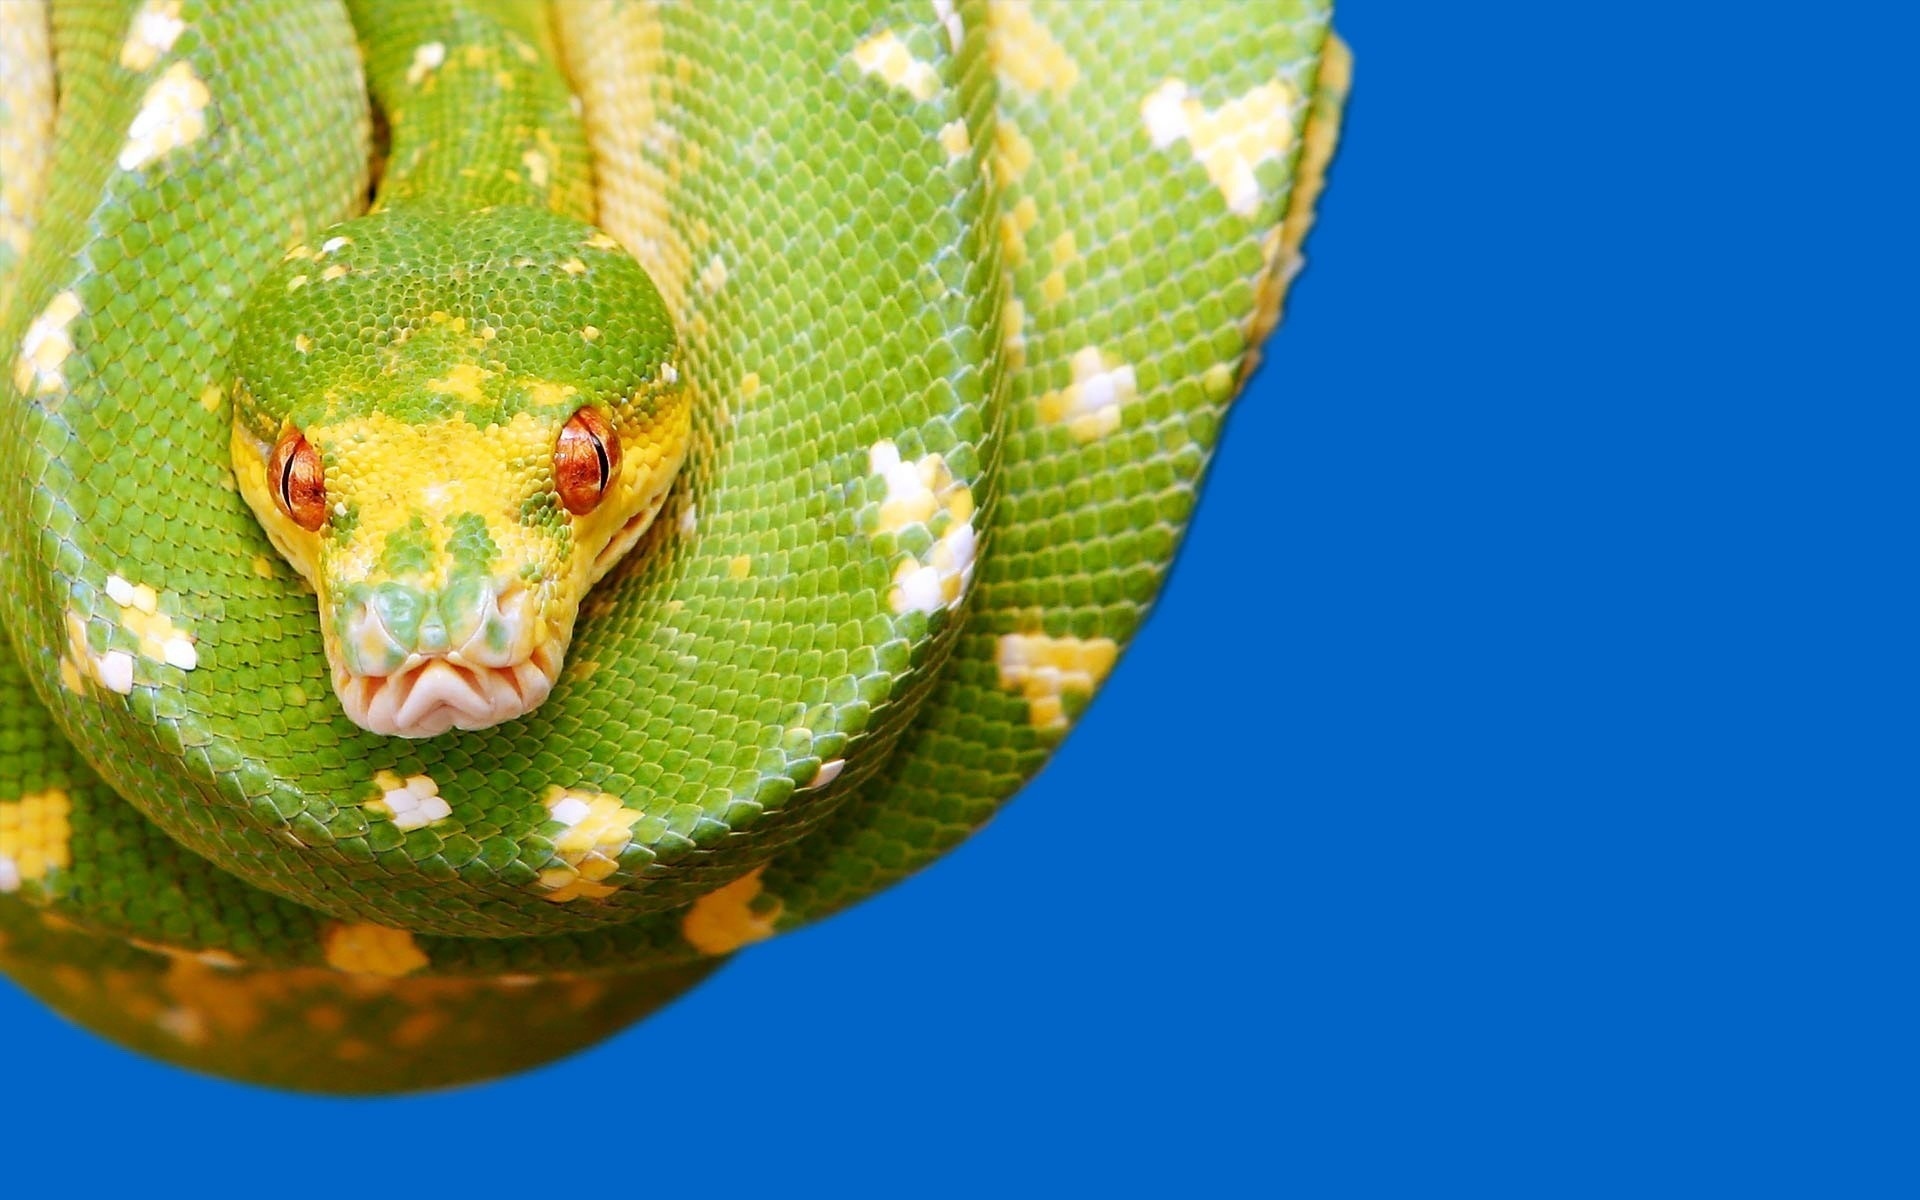 Python snake wallpaper, Eye-catching visuals, Breathtaking imagery, Striking design, 1920x1200 HD Desktop